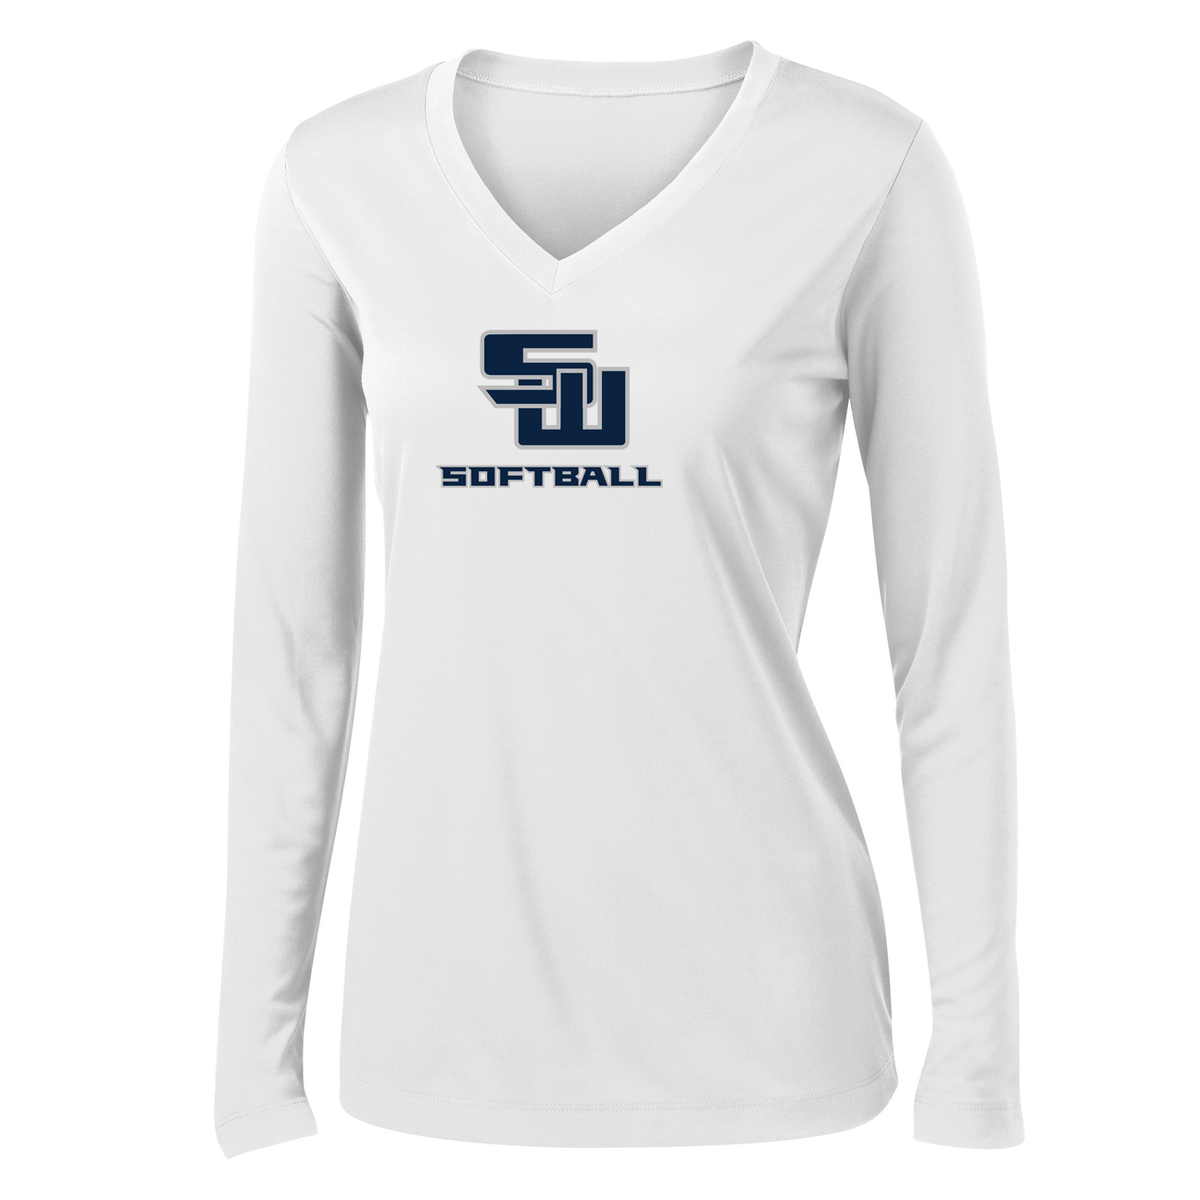 Smithtown West Softball Women's Long Sleeve Performance Shirt